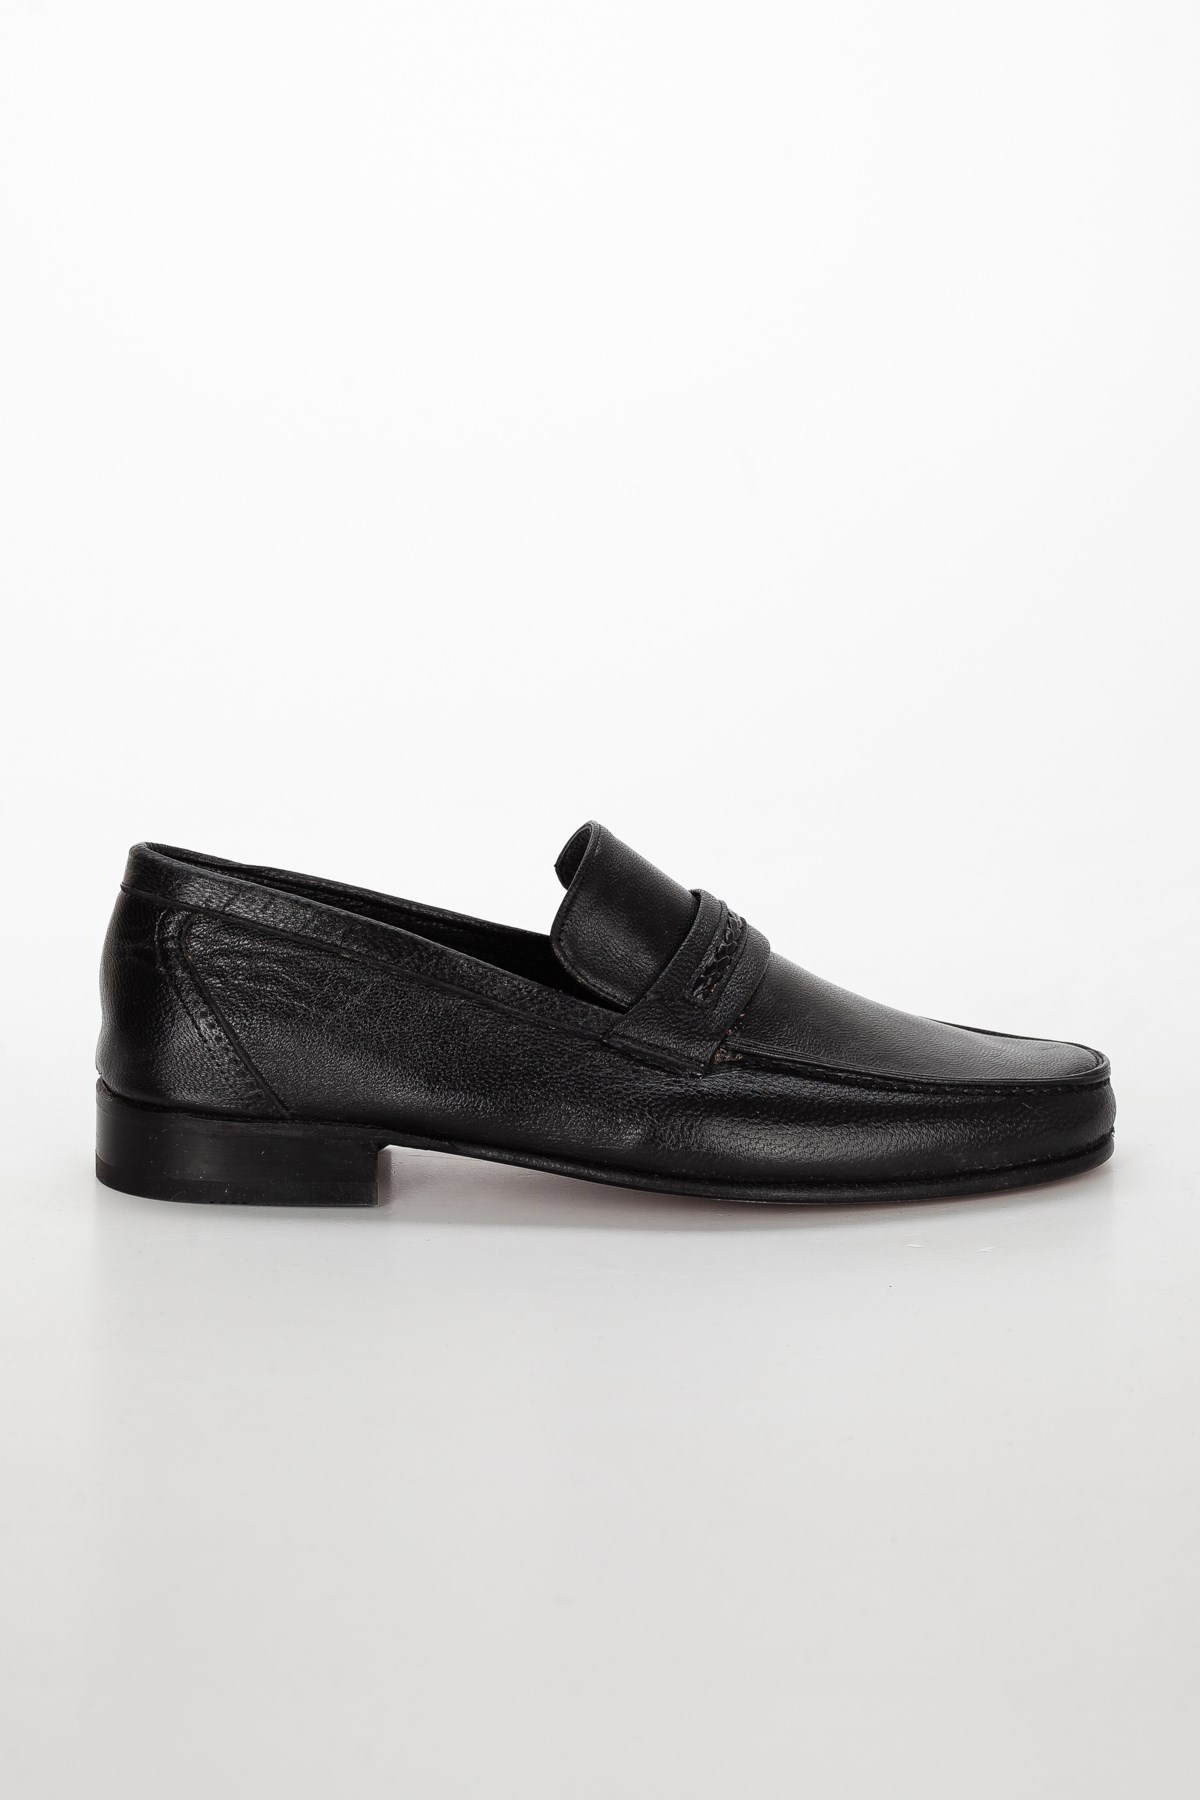 Kösele Hakiki Deri Rok Saraçlı Siyah Erkek Klasik Ayakkabı